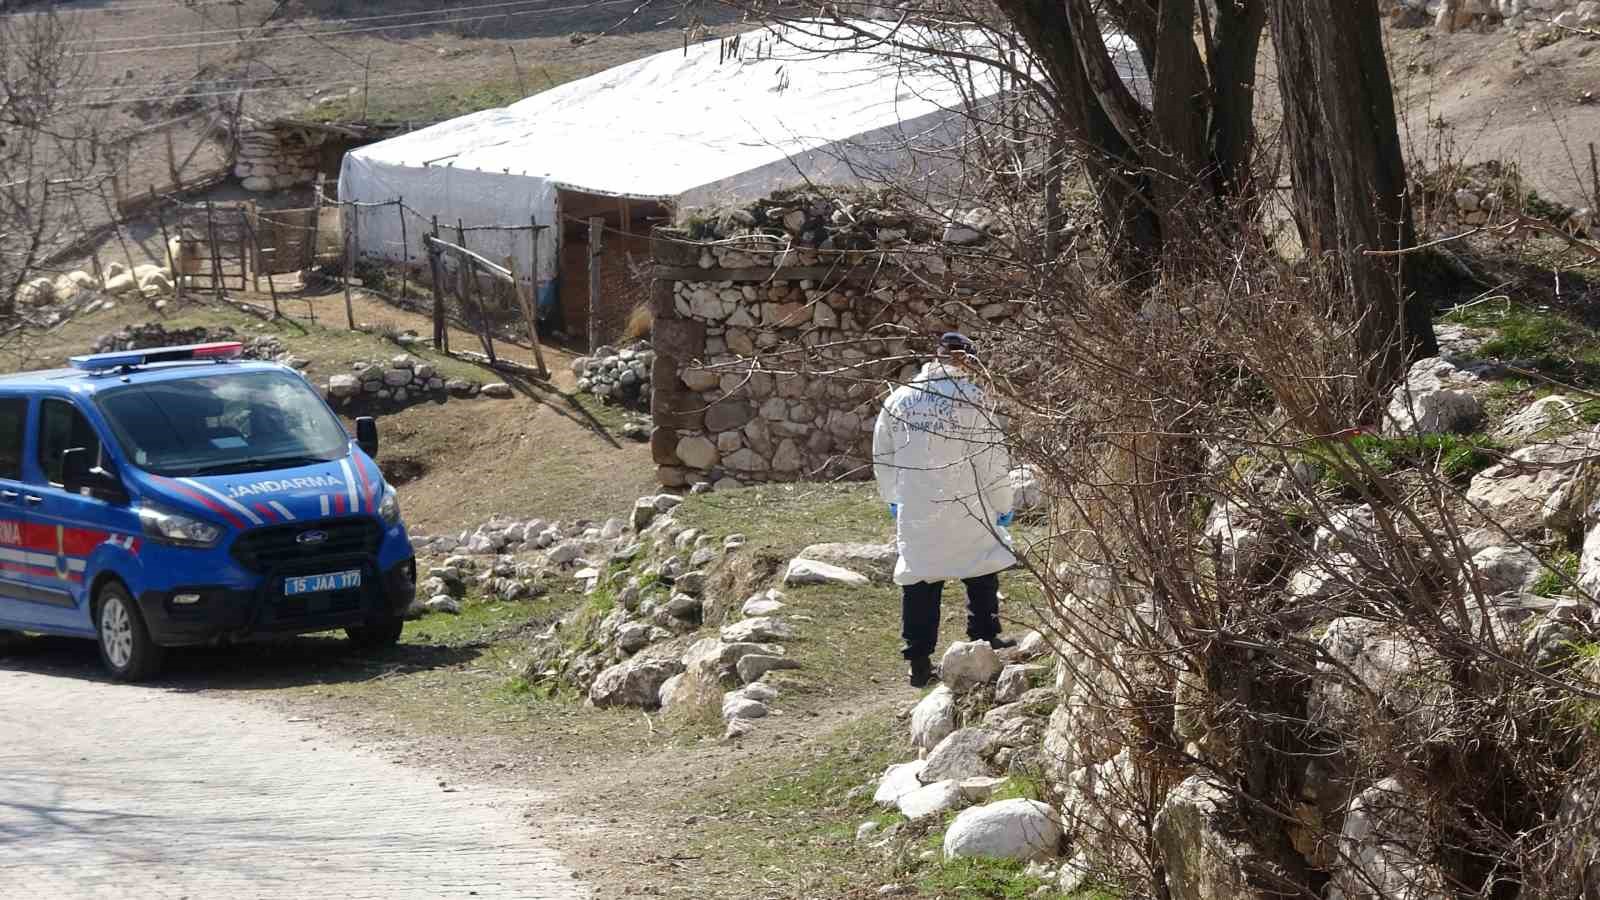 Burdur’da ağıldaki çoban cinayetine 1 tutuklama, 2 adli kontrol
